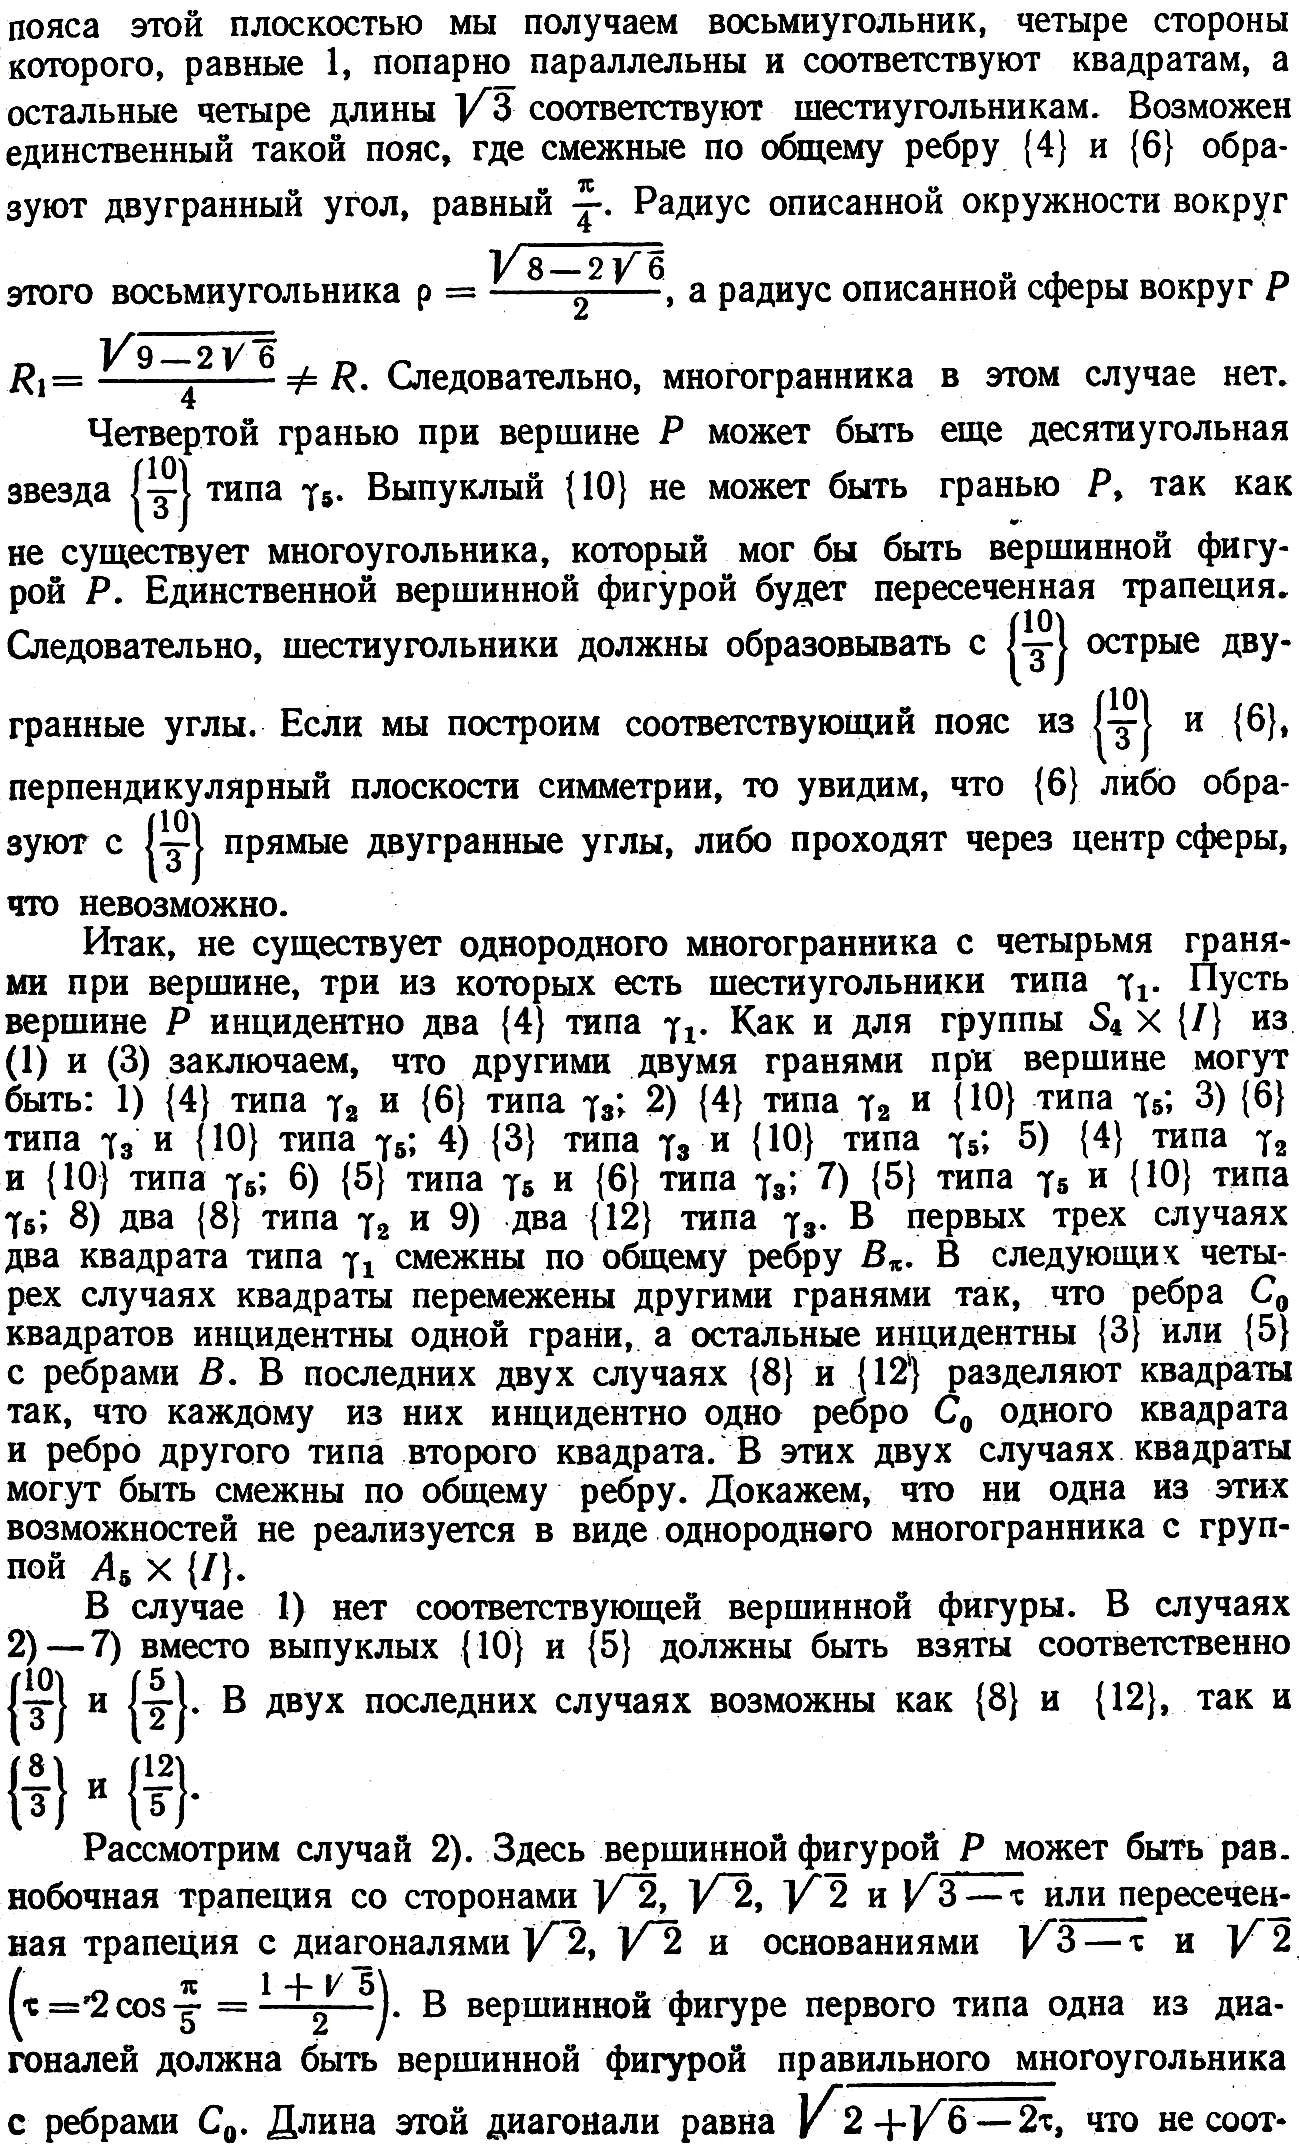 Сопов, статья, стр. 145